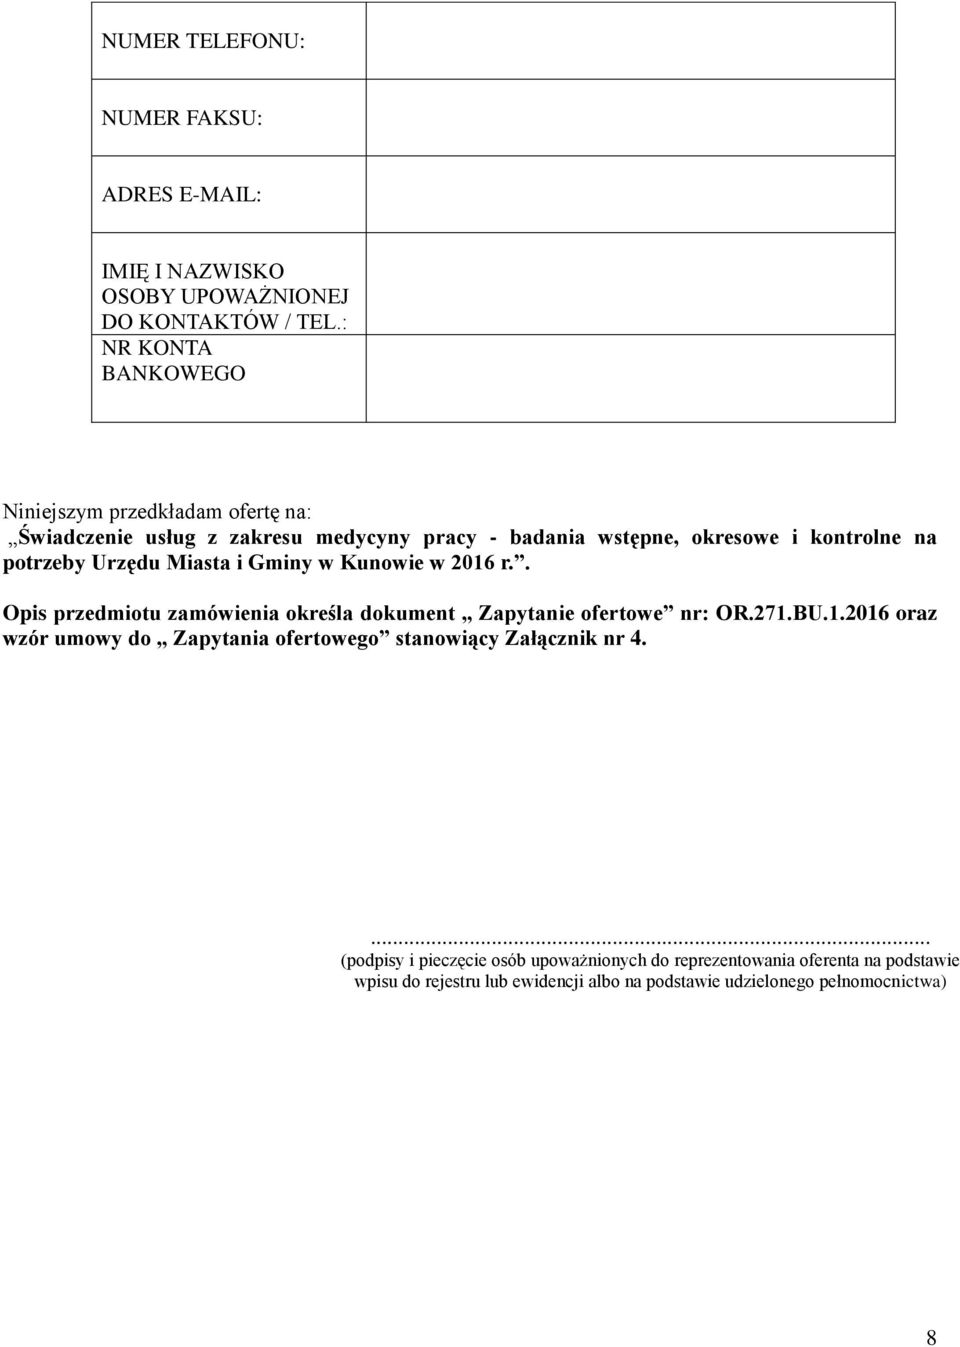 Urzędu Miasta i Gminy w Kunowie w 2016 r.. Opis przedmiotu zamówienia określa dokument Zapytanie ofertowe nr: OR.271.BU.1.2016 oraz wzór umowy do Zapytania ofertowego stanowiący Załącznik nr 4.